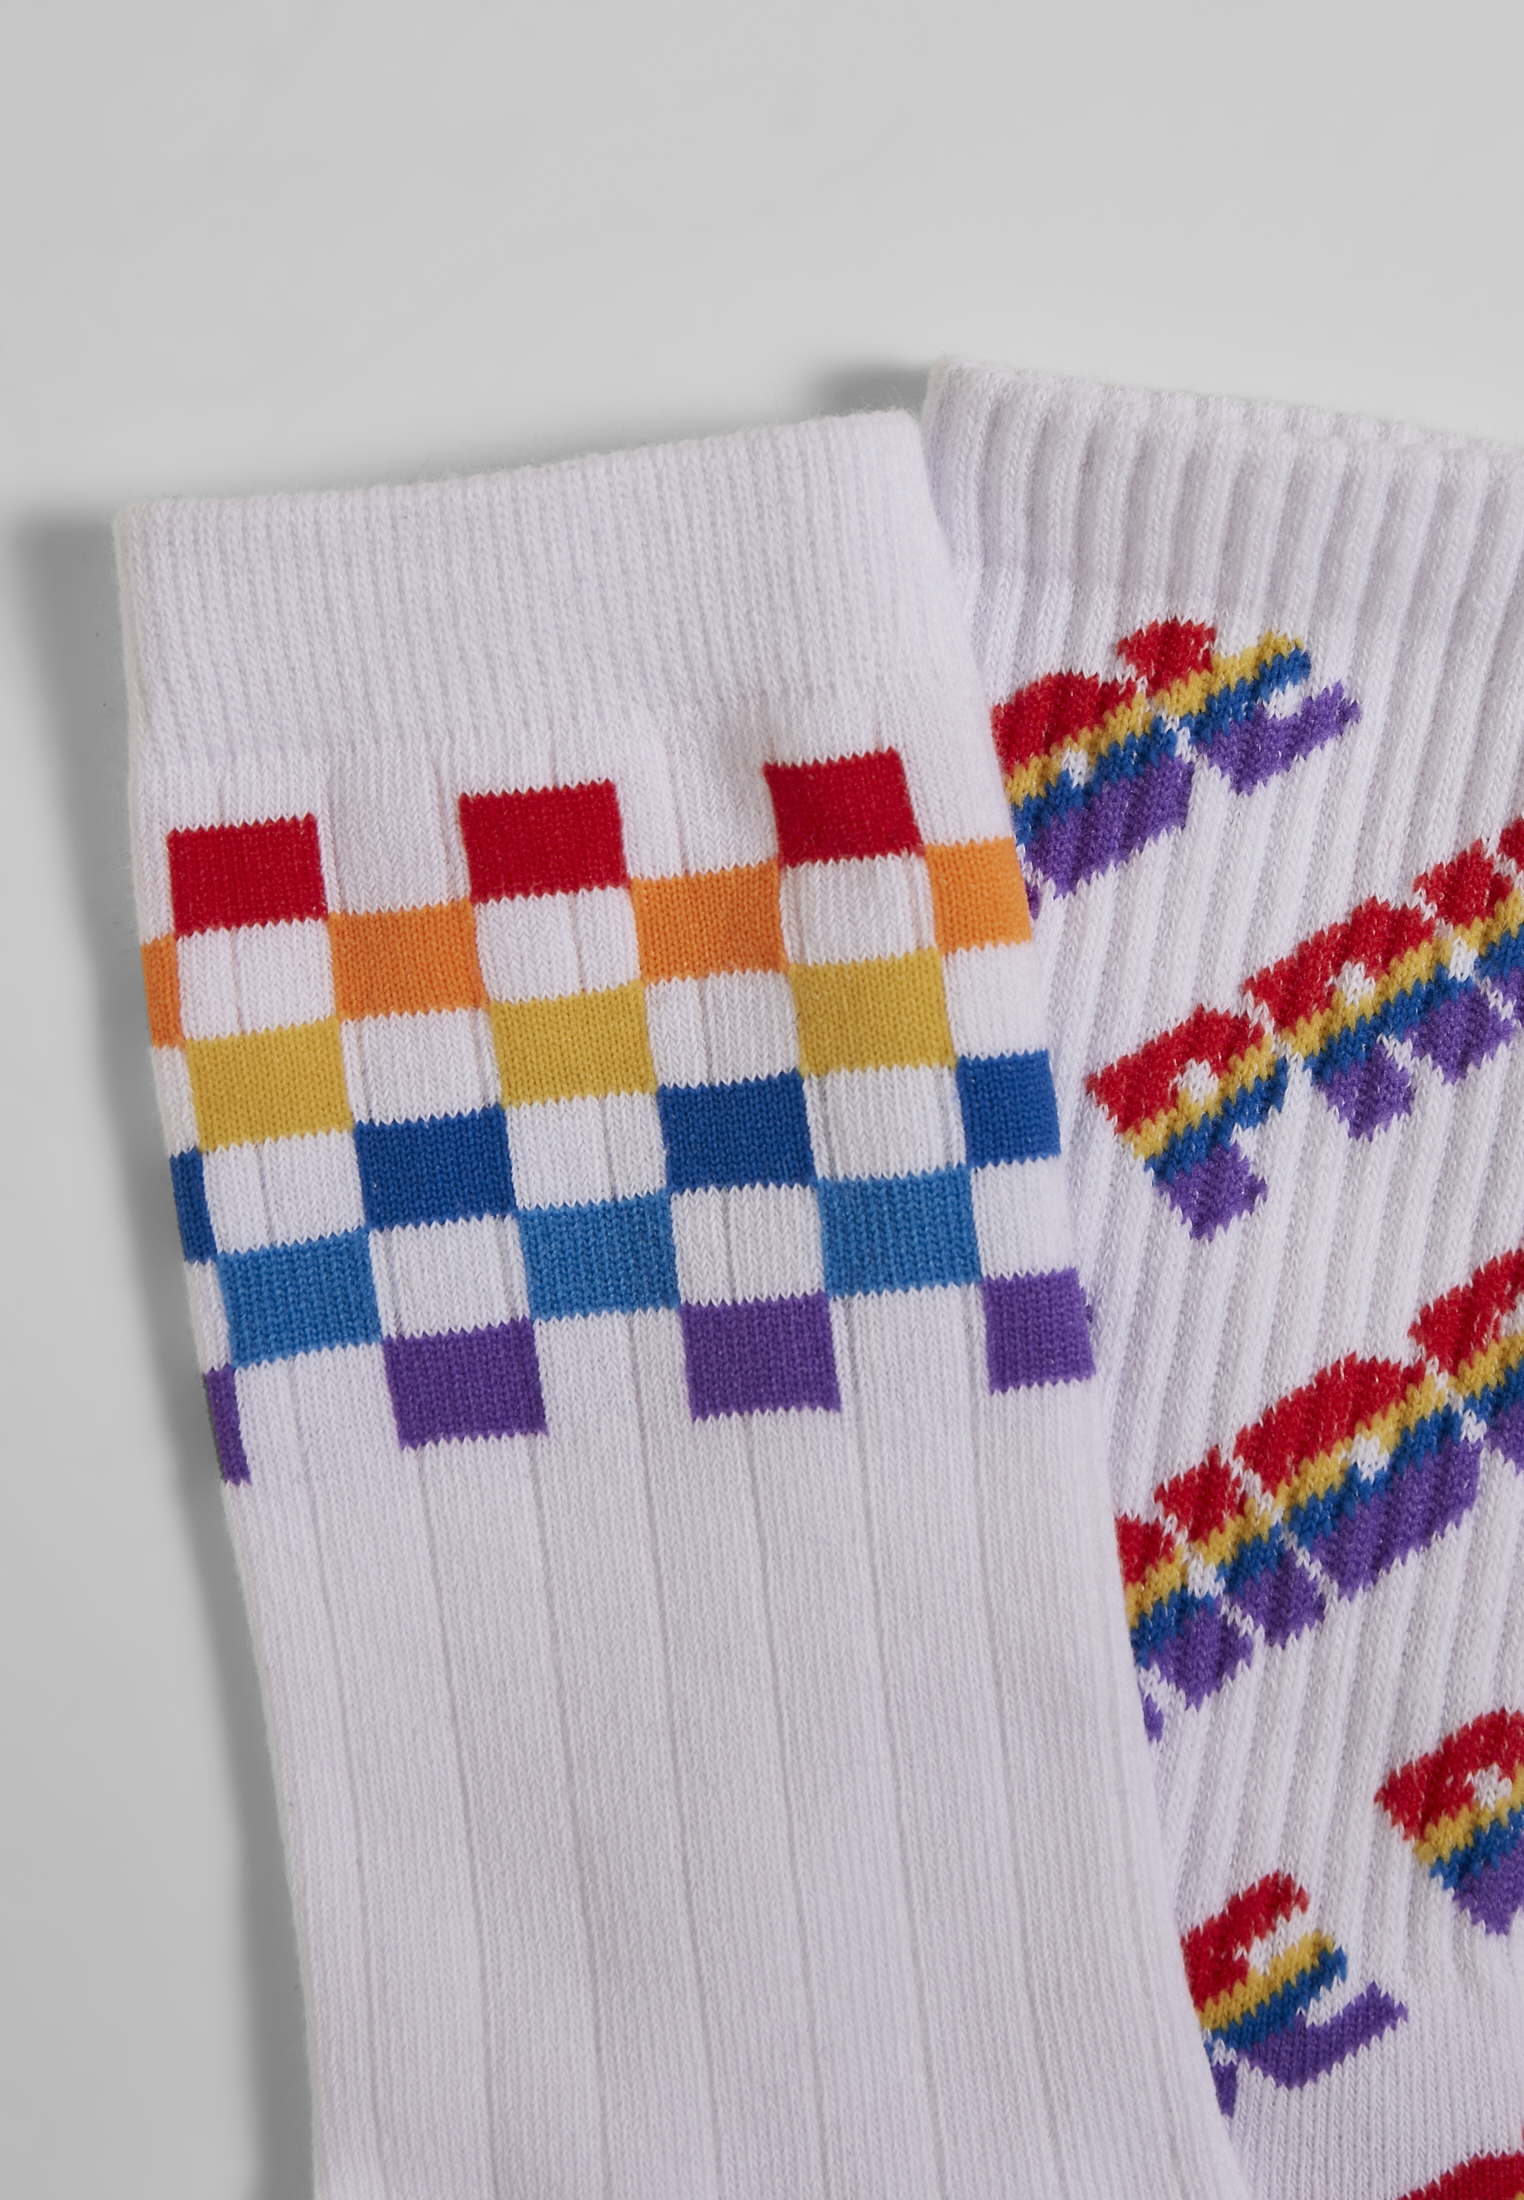 Socken Pride Racing Socks 2-Pack in Farbe multicolor